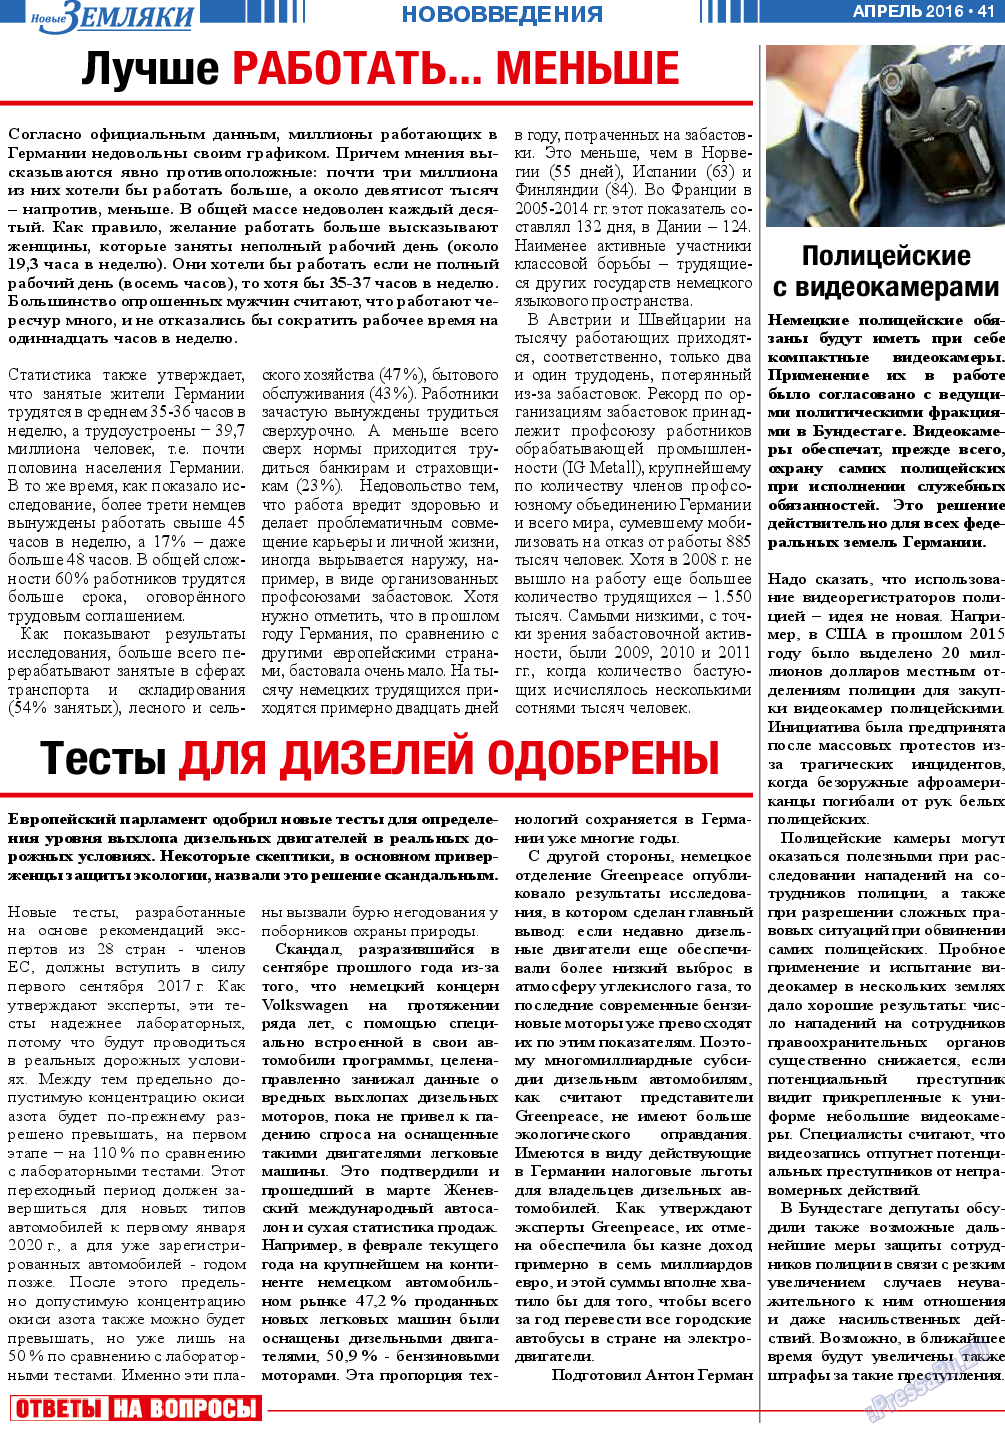 Новые Земляки, газета. 2016 №4 стр.41